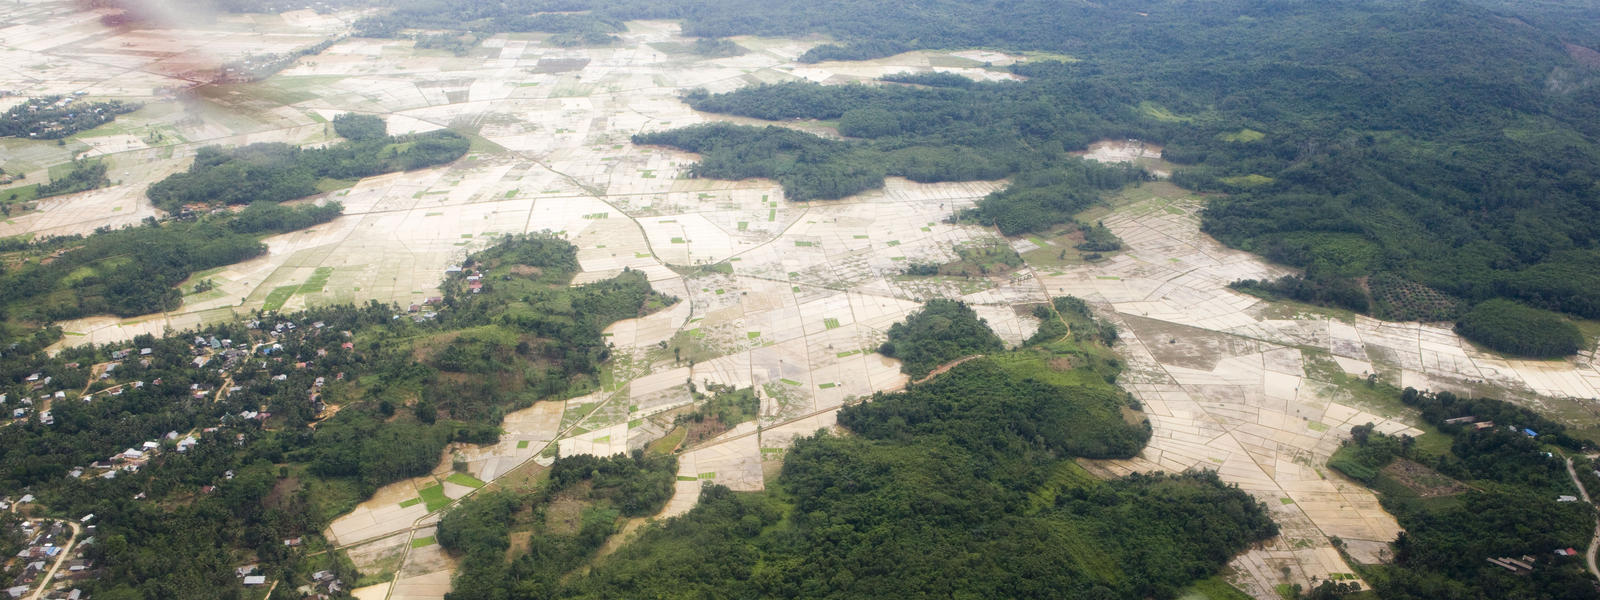 image of deforestation